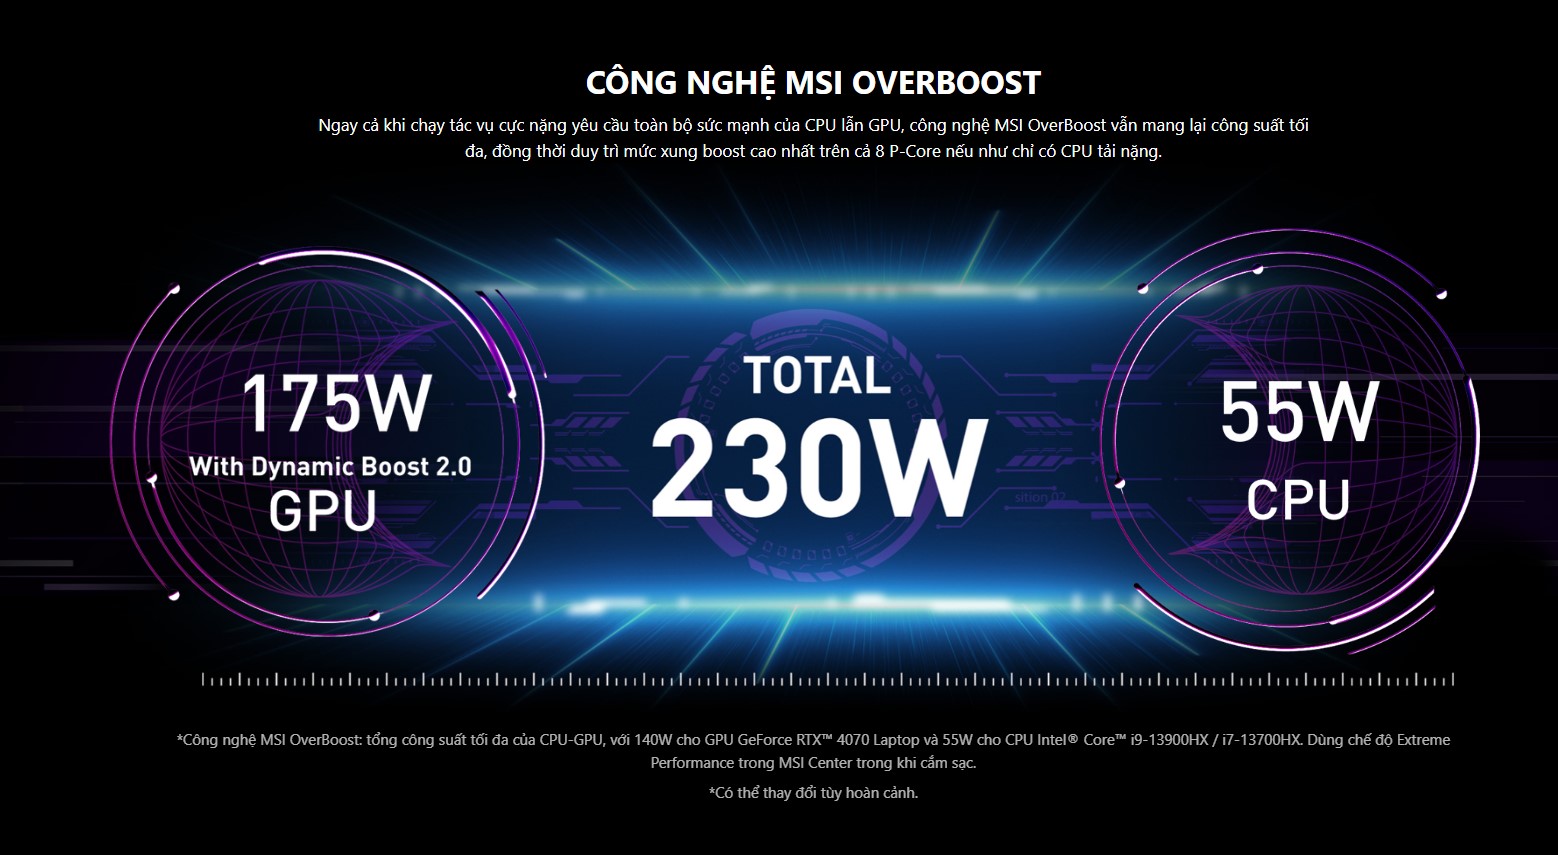 Ngay cả khi chạy tác vụ cực nặng yêu cầu toàn bộ sức mạnh của CPU lẫn GPU, công nghệ MSI OverBoost vẫn mang lại công suất tối đa, đồng thời duy trì mức xung boost cao nhất trên cả 8 P-Core nếu như chỉ có CPU tải nặng.